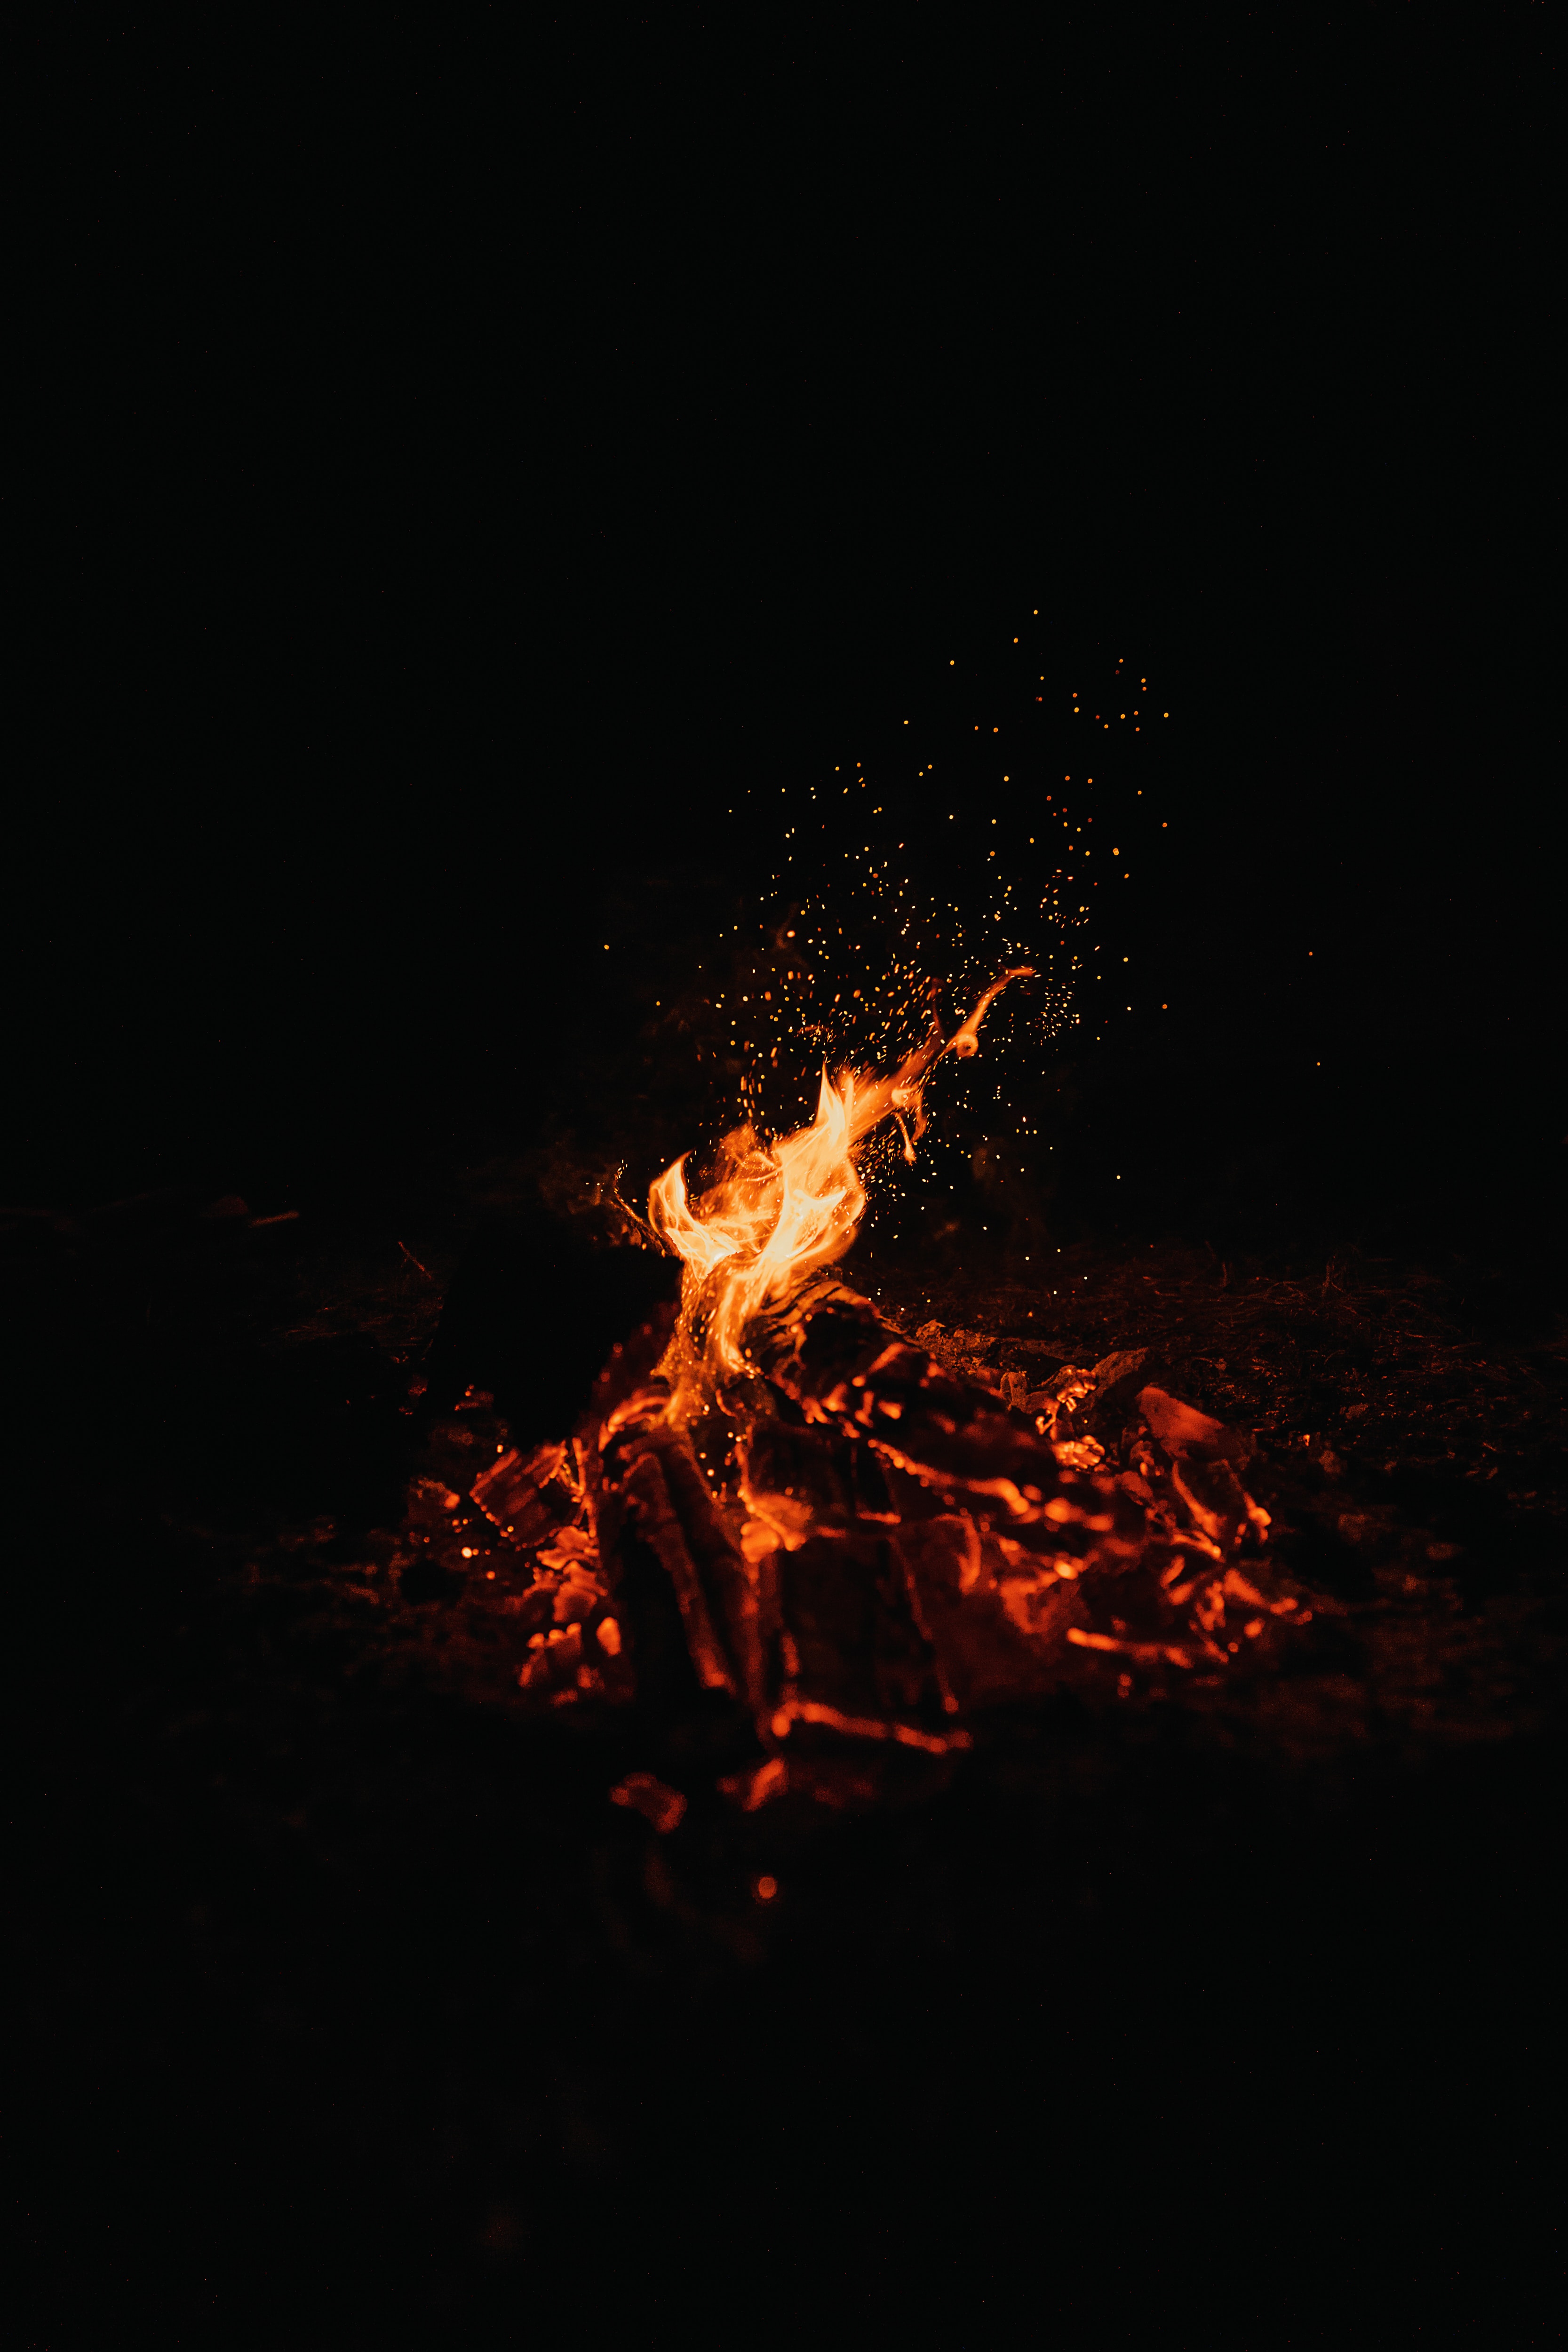 fire, bonfire, dark, sparks, night wallpaper for mobile